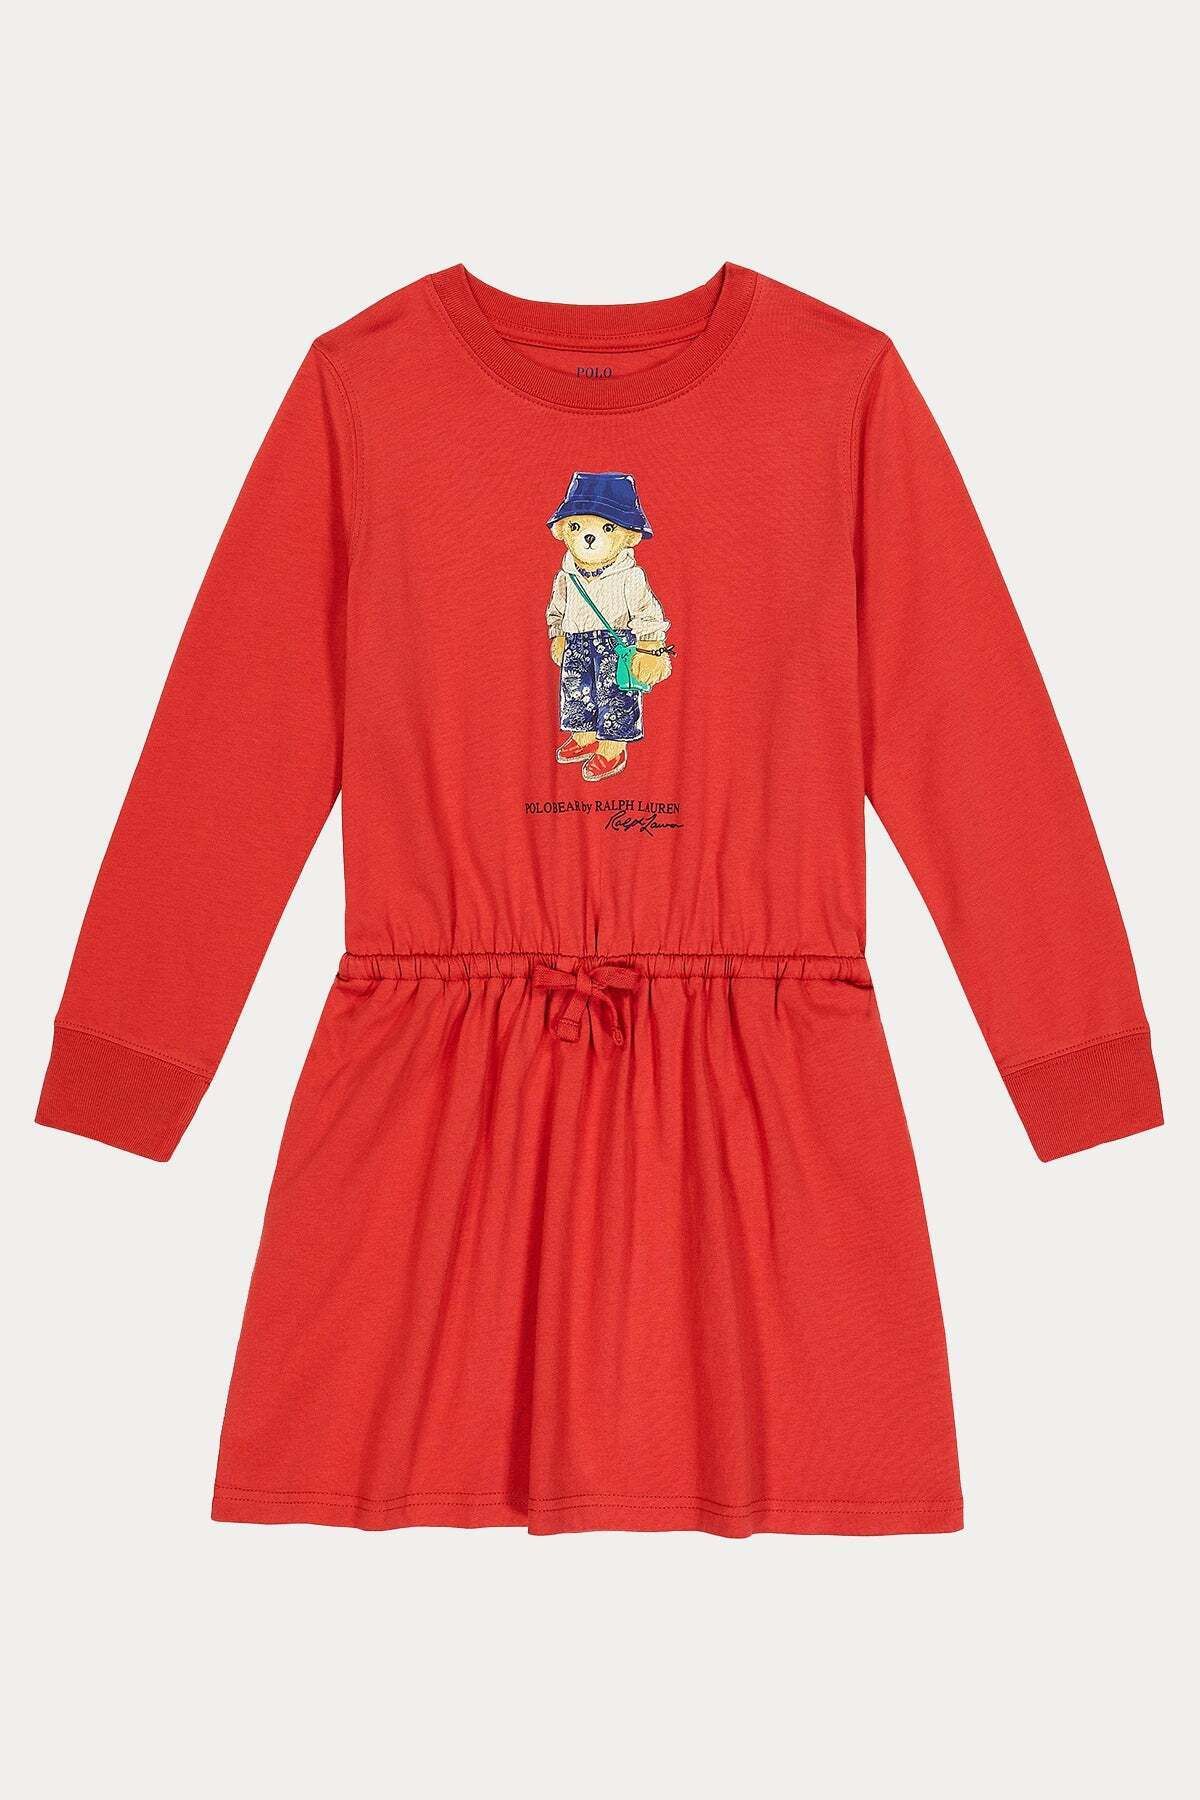 Ralph Lauren 2-3 Yaş Kız Çocuk Polo Bear Elbise 3y / Kırmızı